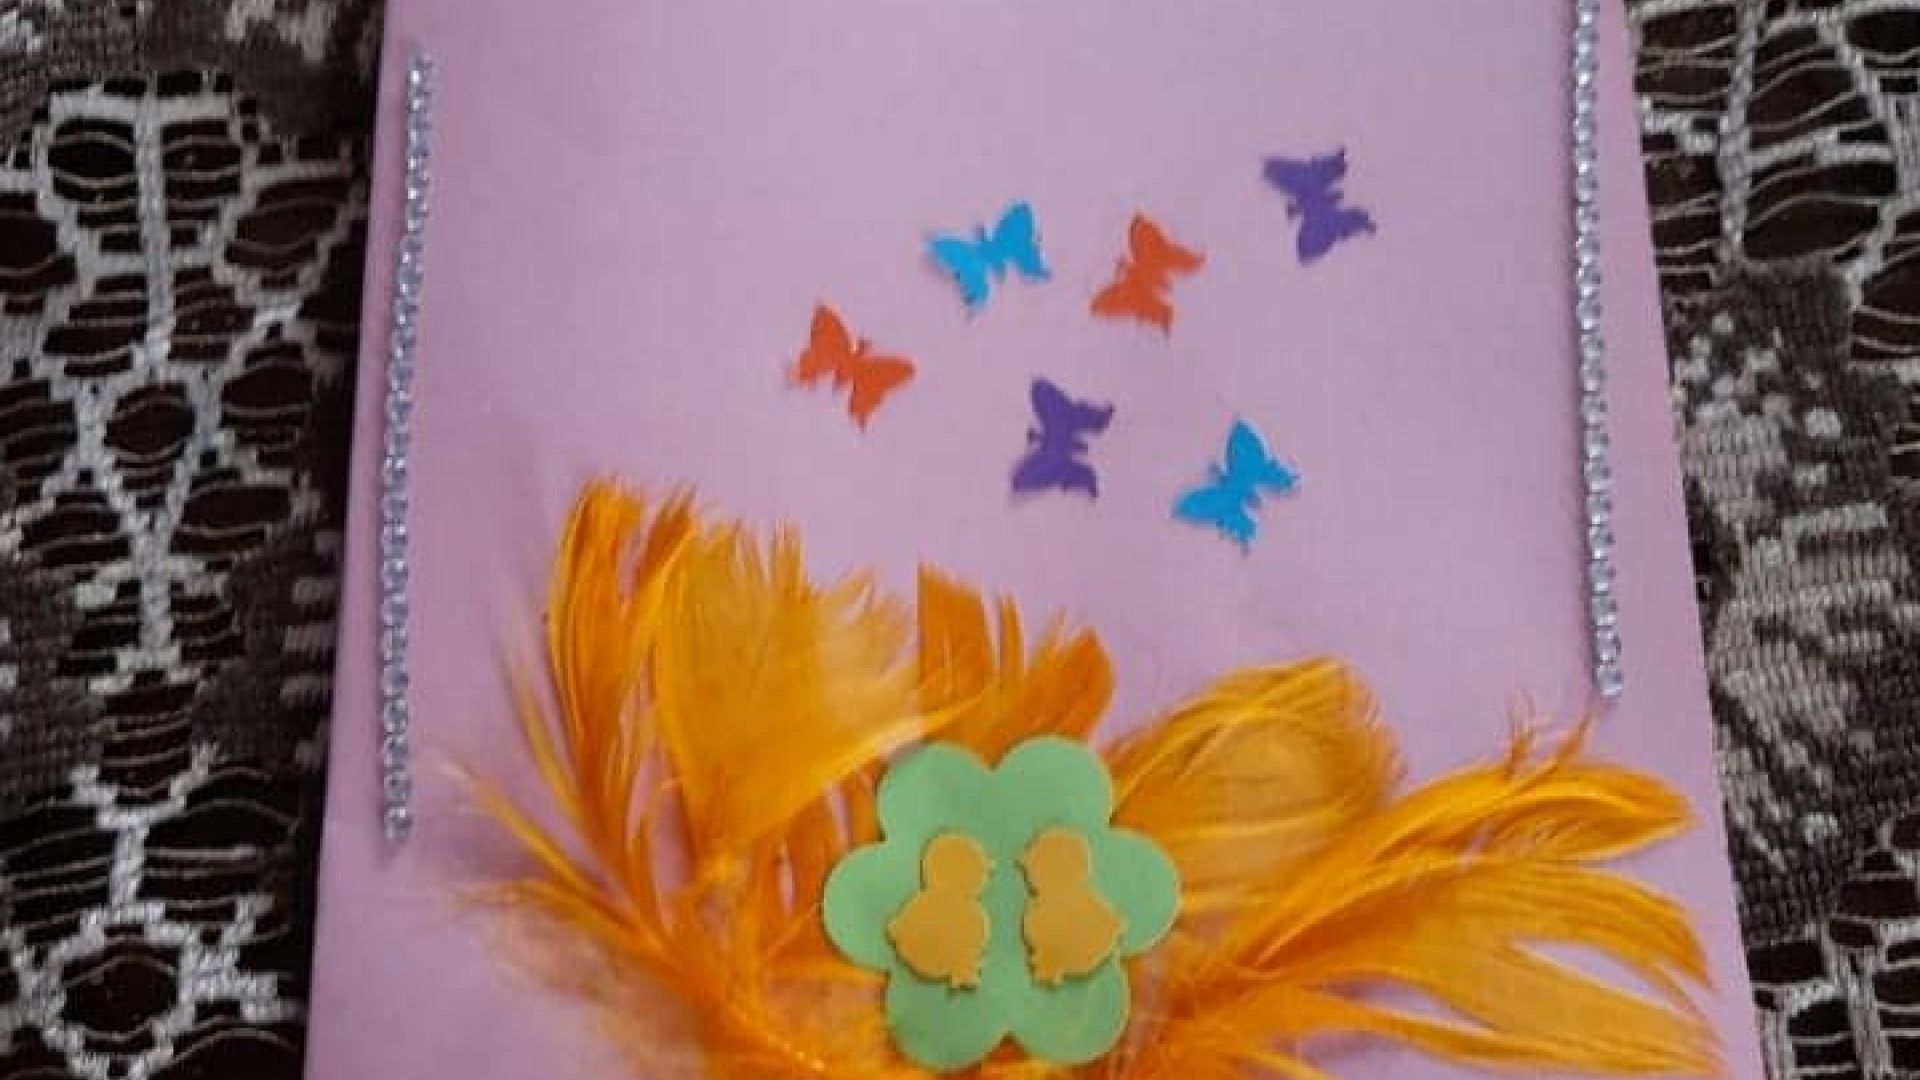 Kartka wielkanocna z żółtymi kurczaczkami przyklejonymi na zielonym kwiatku, z pomarańczowymi piórkami w tle i kolorowymi motylami. Autor: Agnieszka W. 